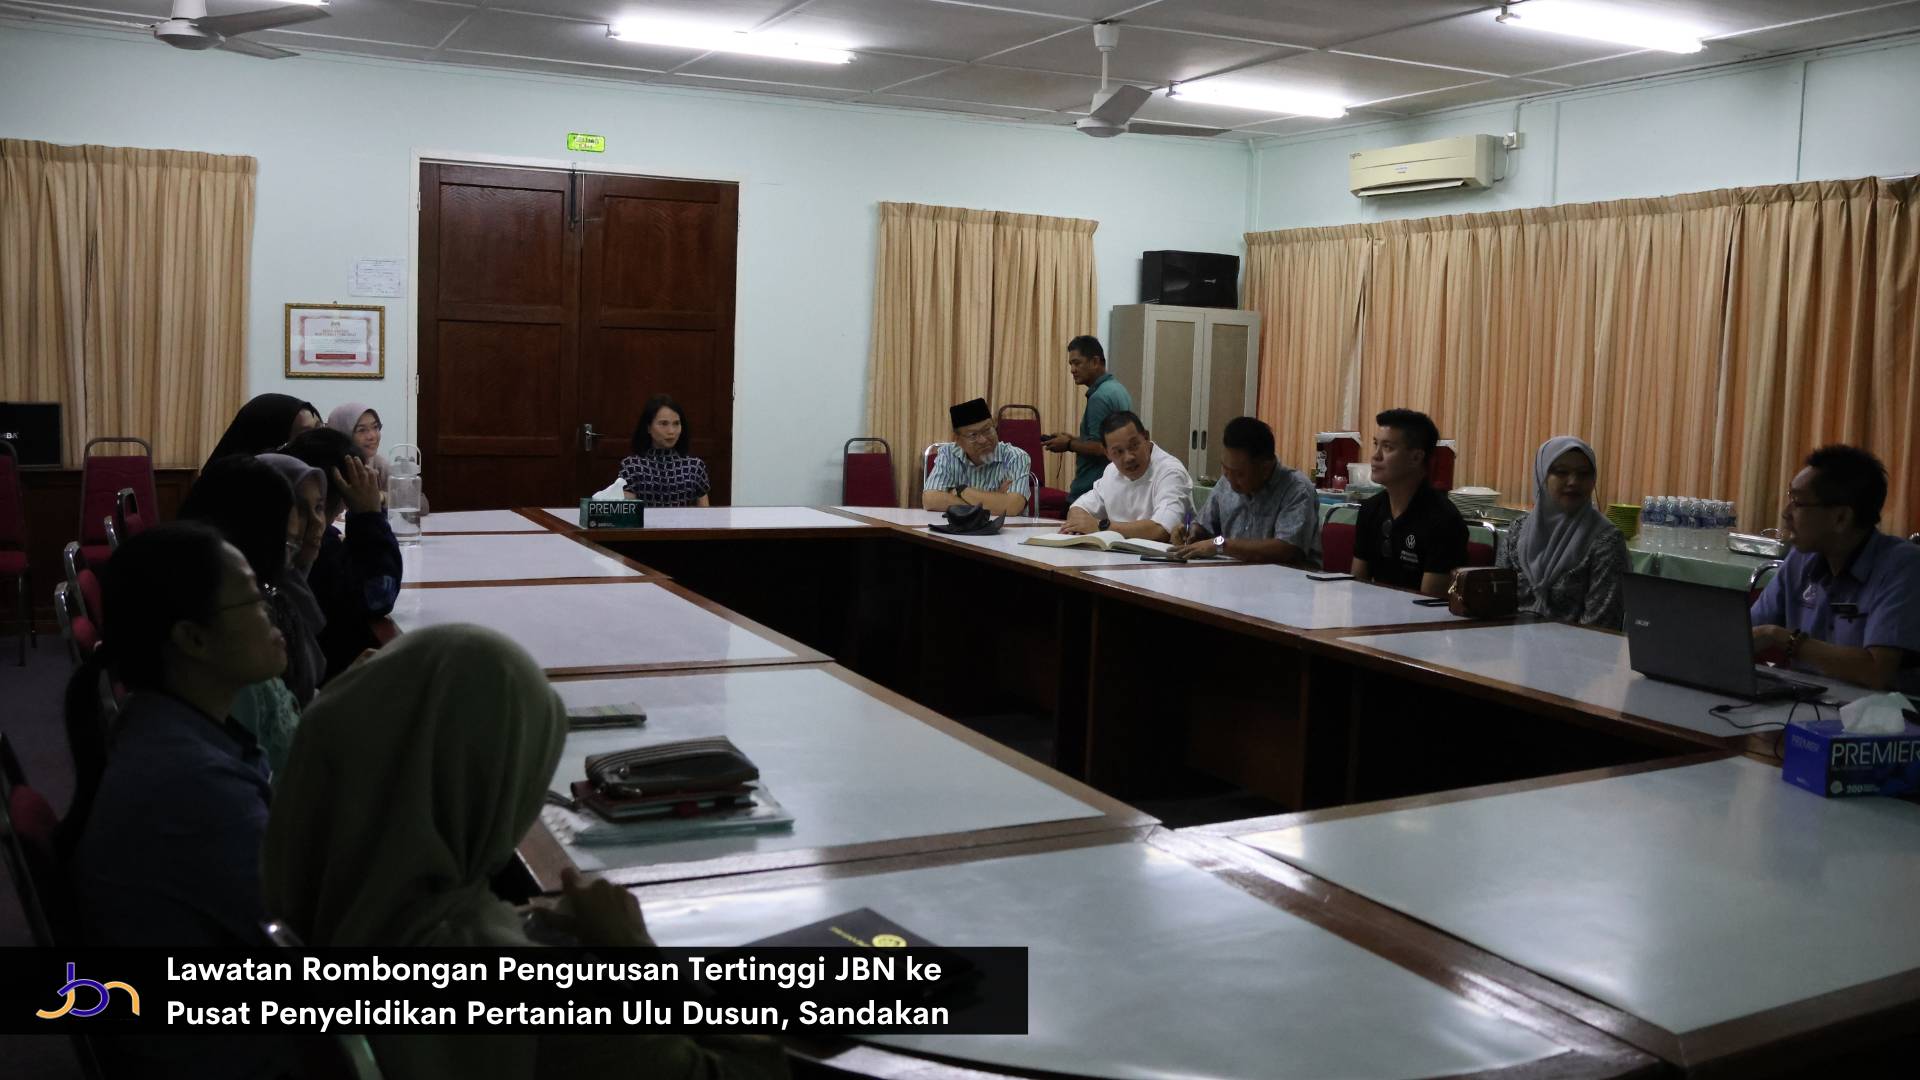 Lawatan Rombongan Pengurusan Tertinggi JBN ke Pusat Penyelidikan Pertanian Ulu Dusun, Sandakan